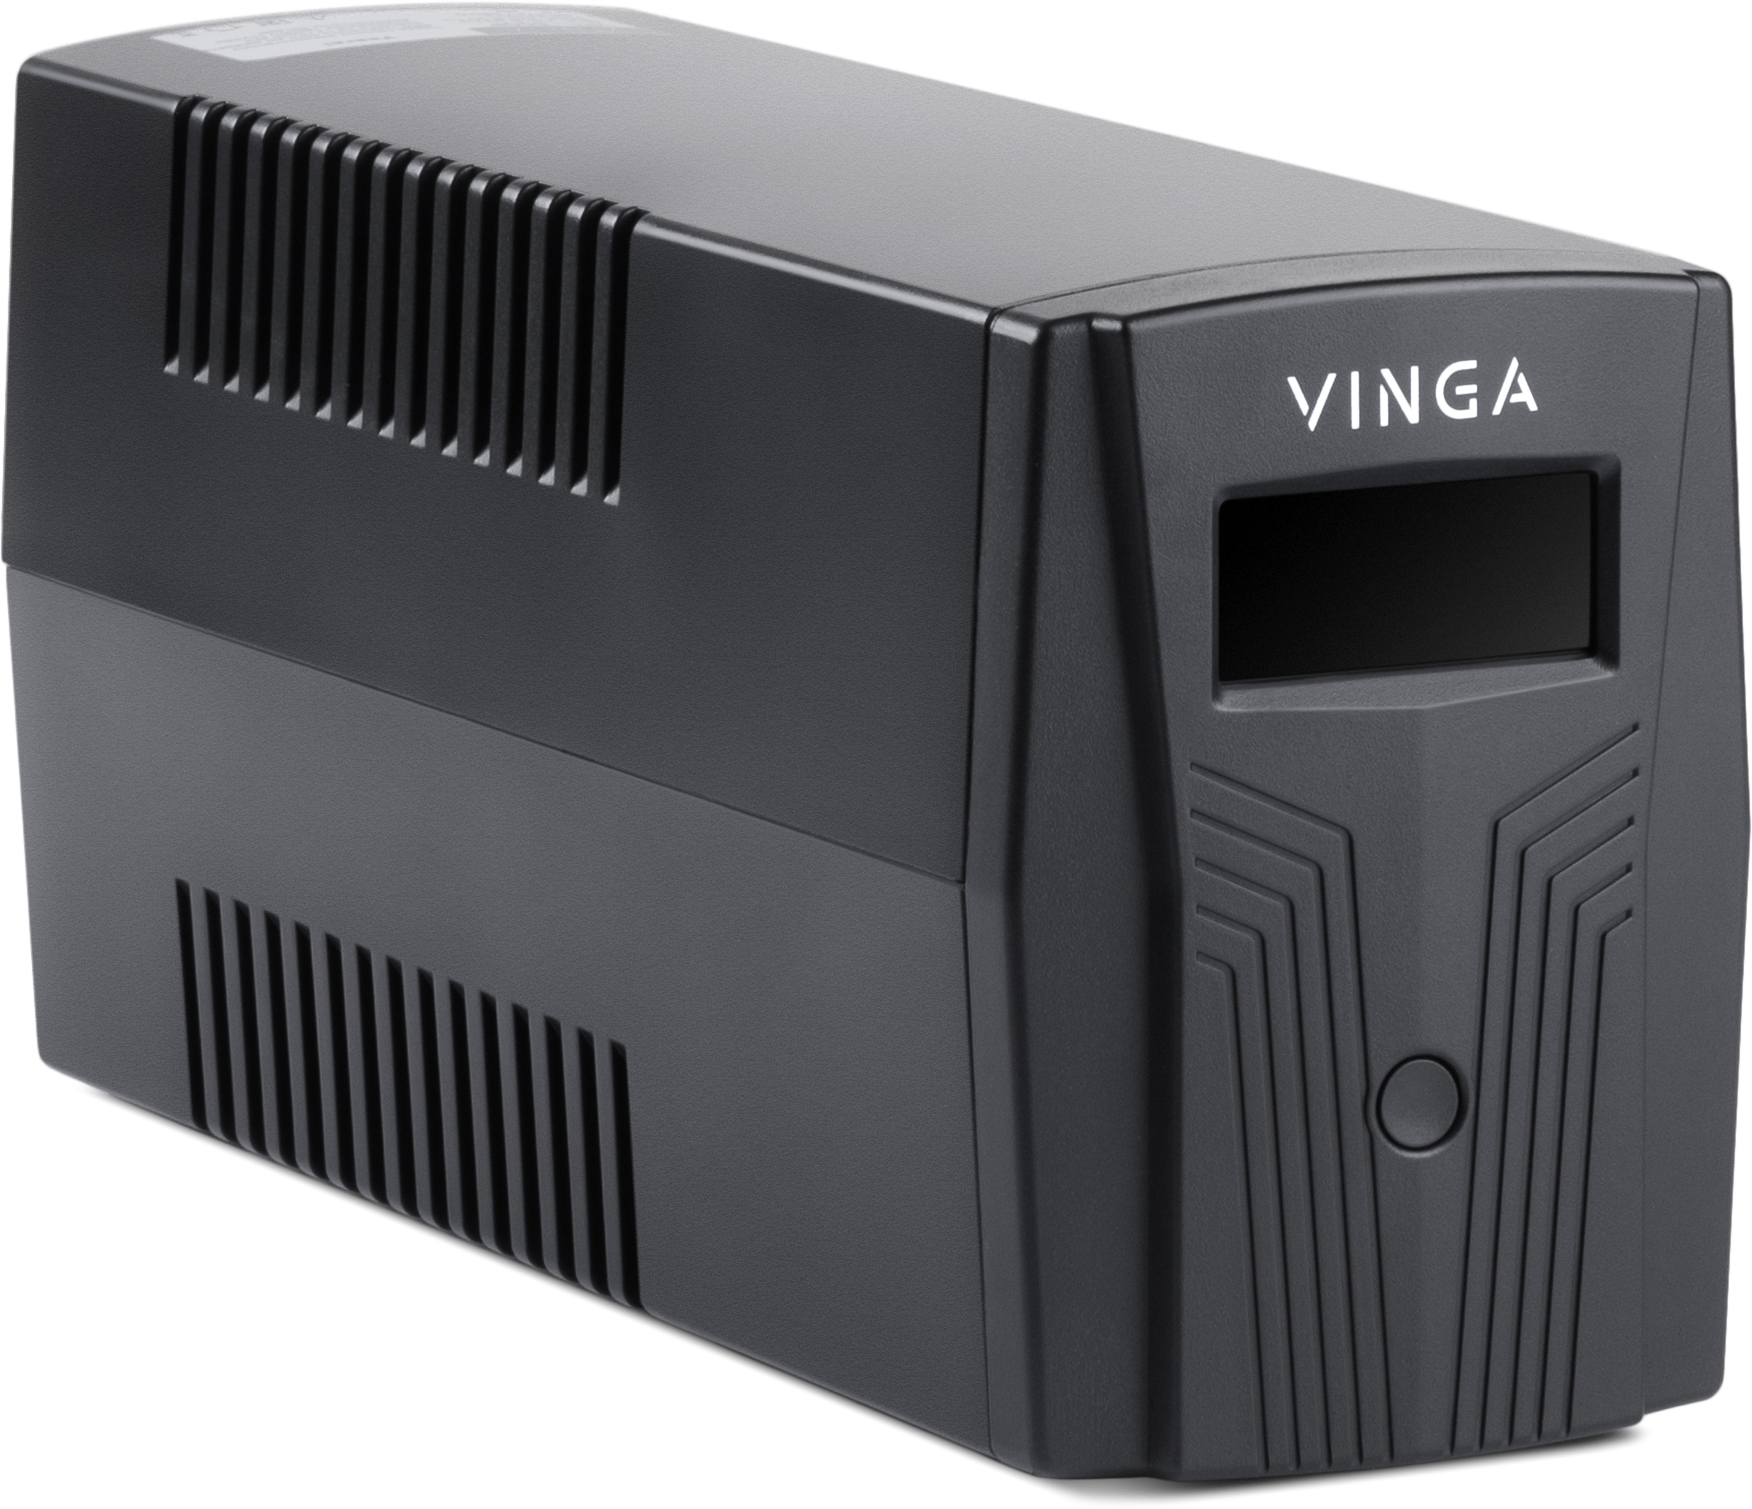 Источник бесперебойного питания Vinga LCD 600VA (VPC-600P) характеристики - фотография 7